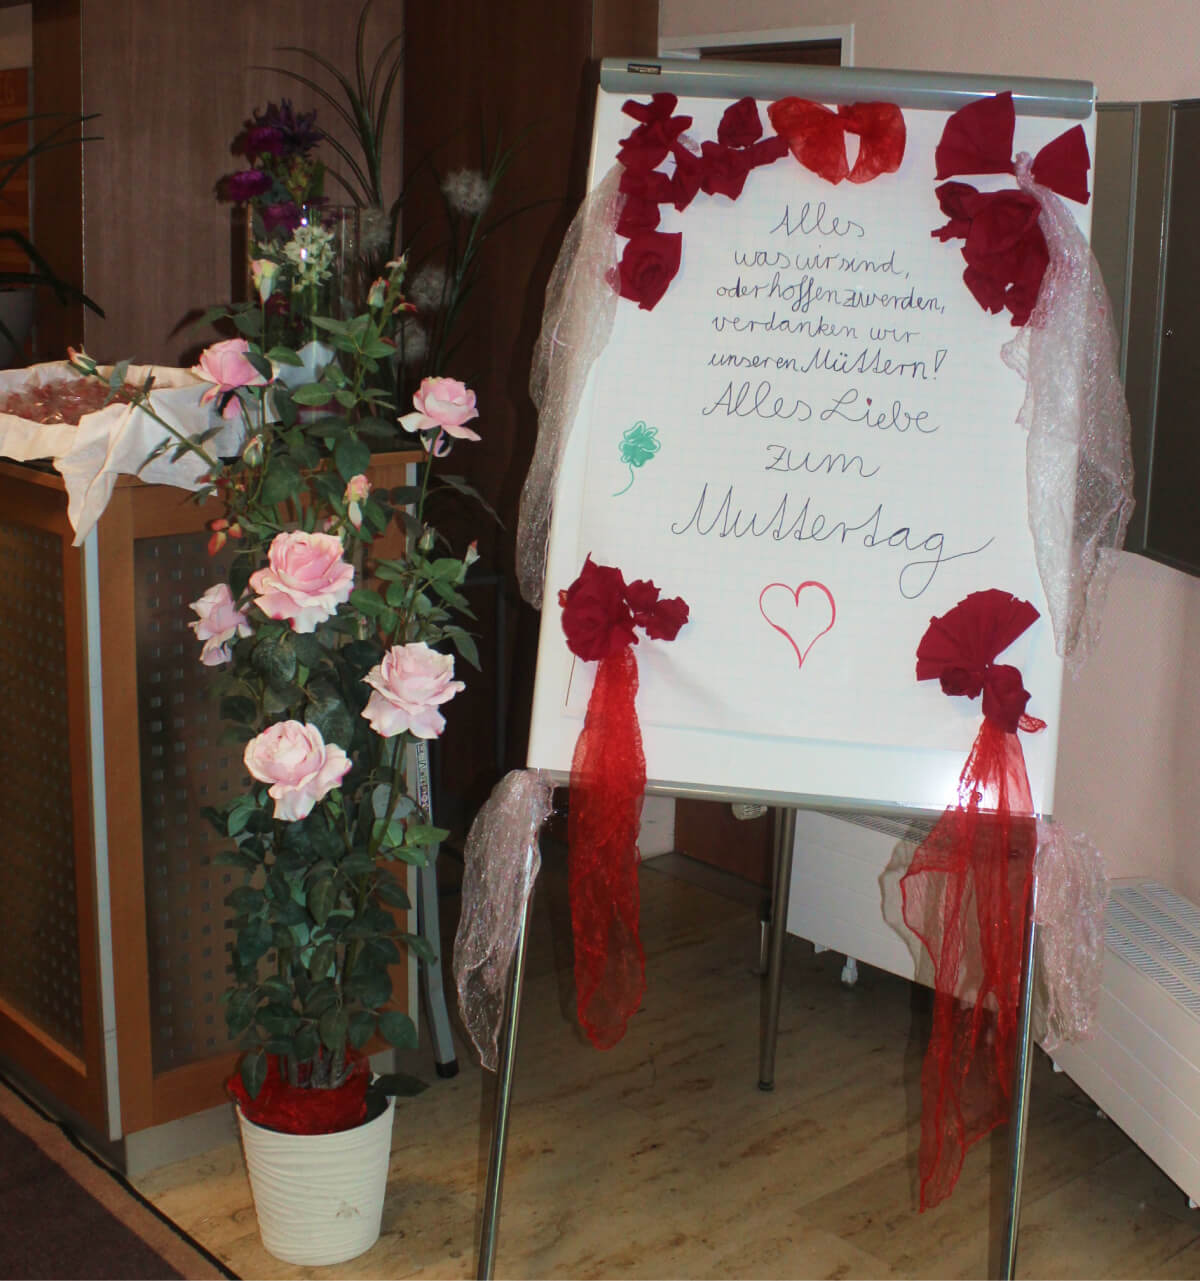 Tafel mit Grüßen zu Muttertag in der CMS Seniorenresidenz "Am Kurpark" in Wiesbaden